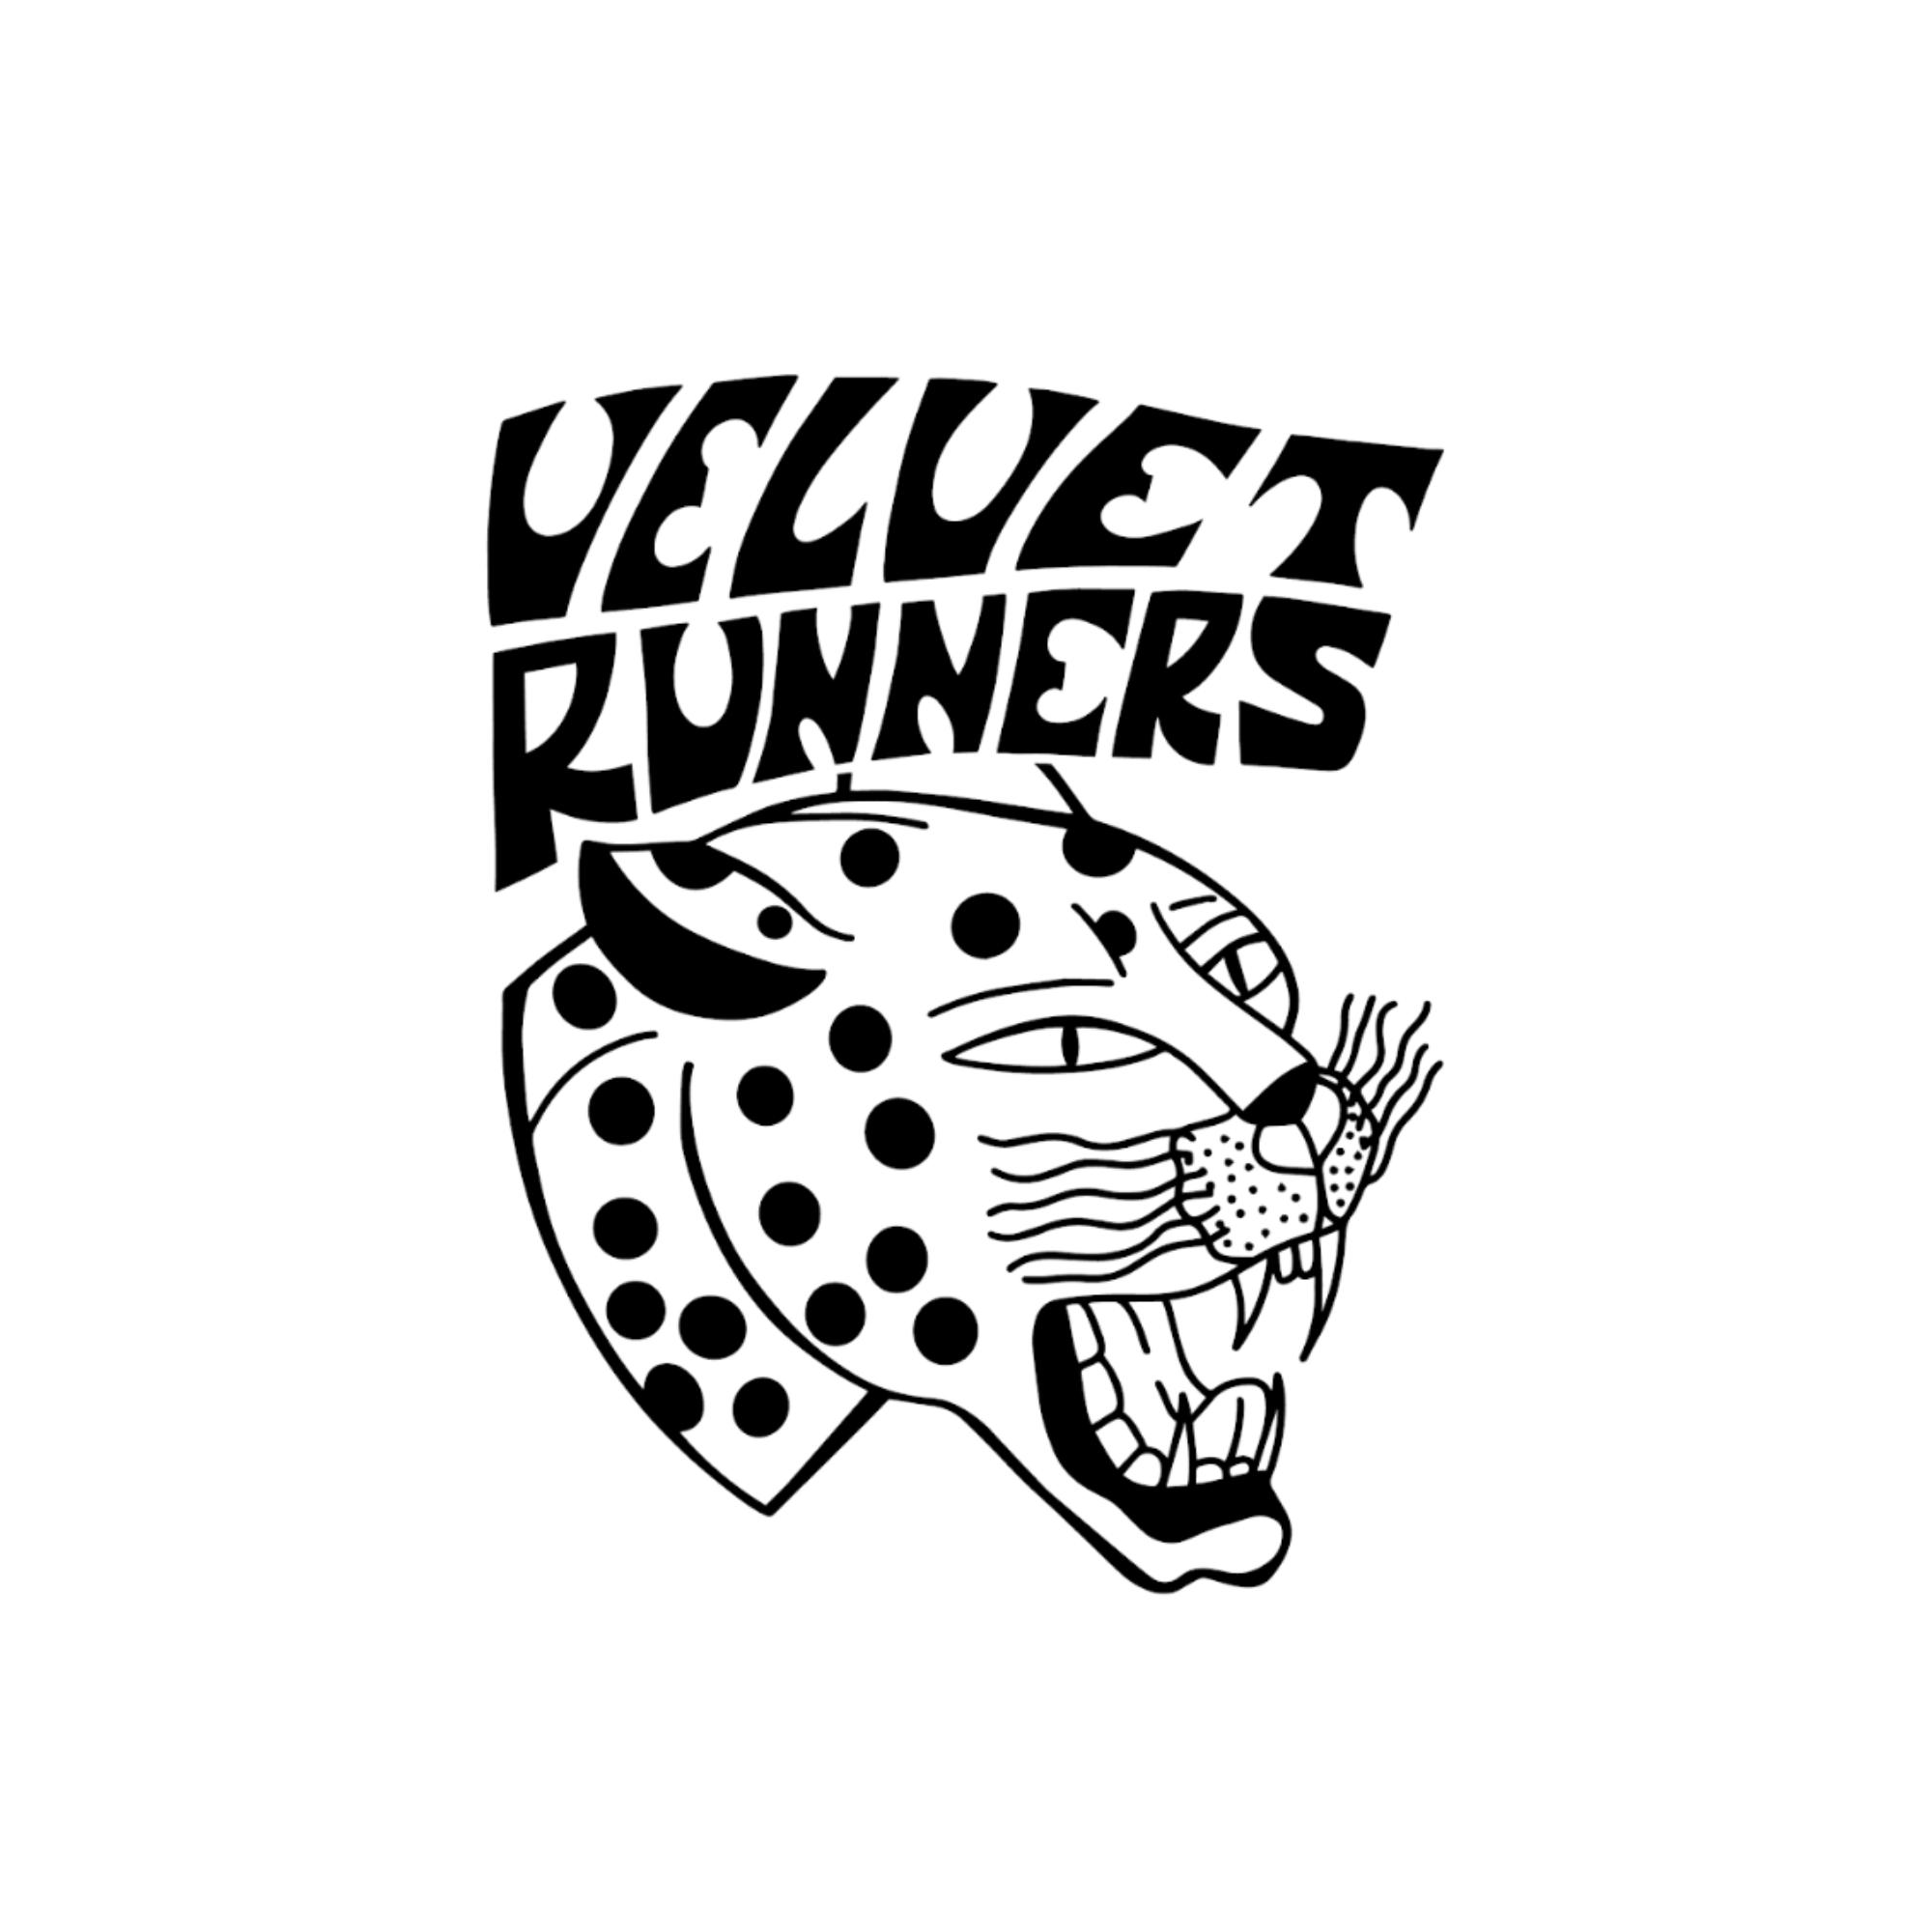 Velvet Runners